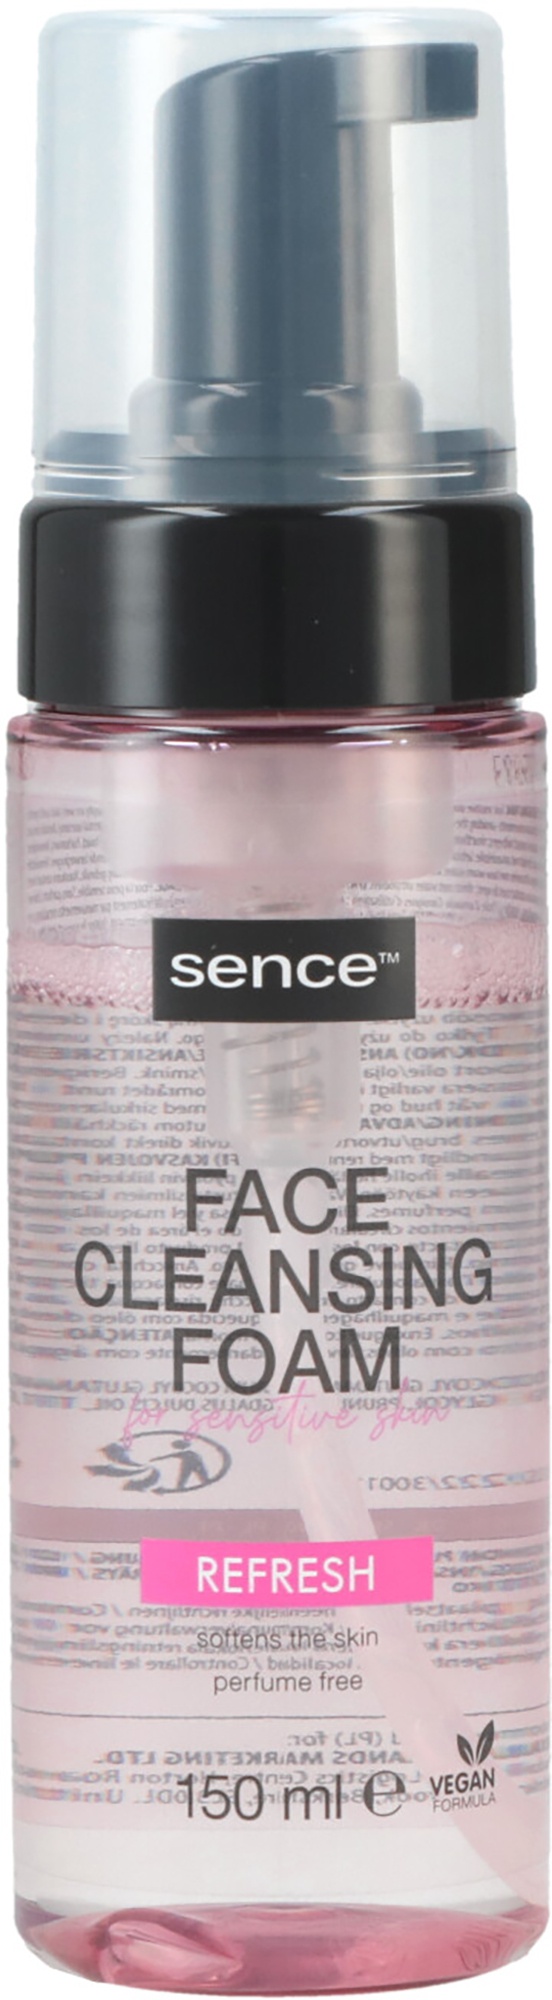 Sence Beauty Face Cleansing Foam